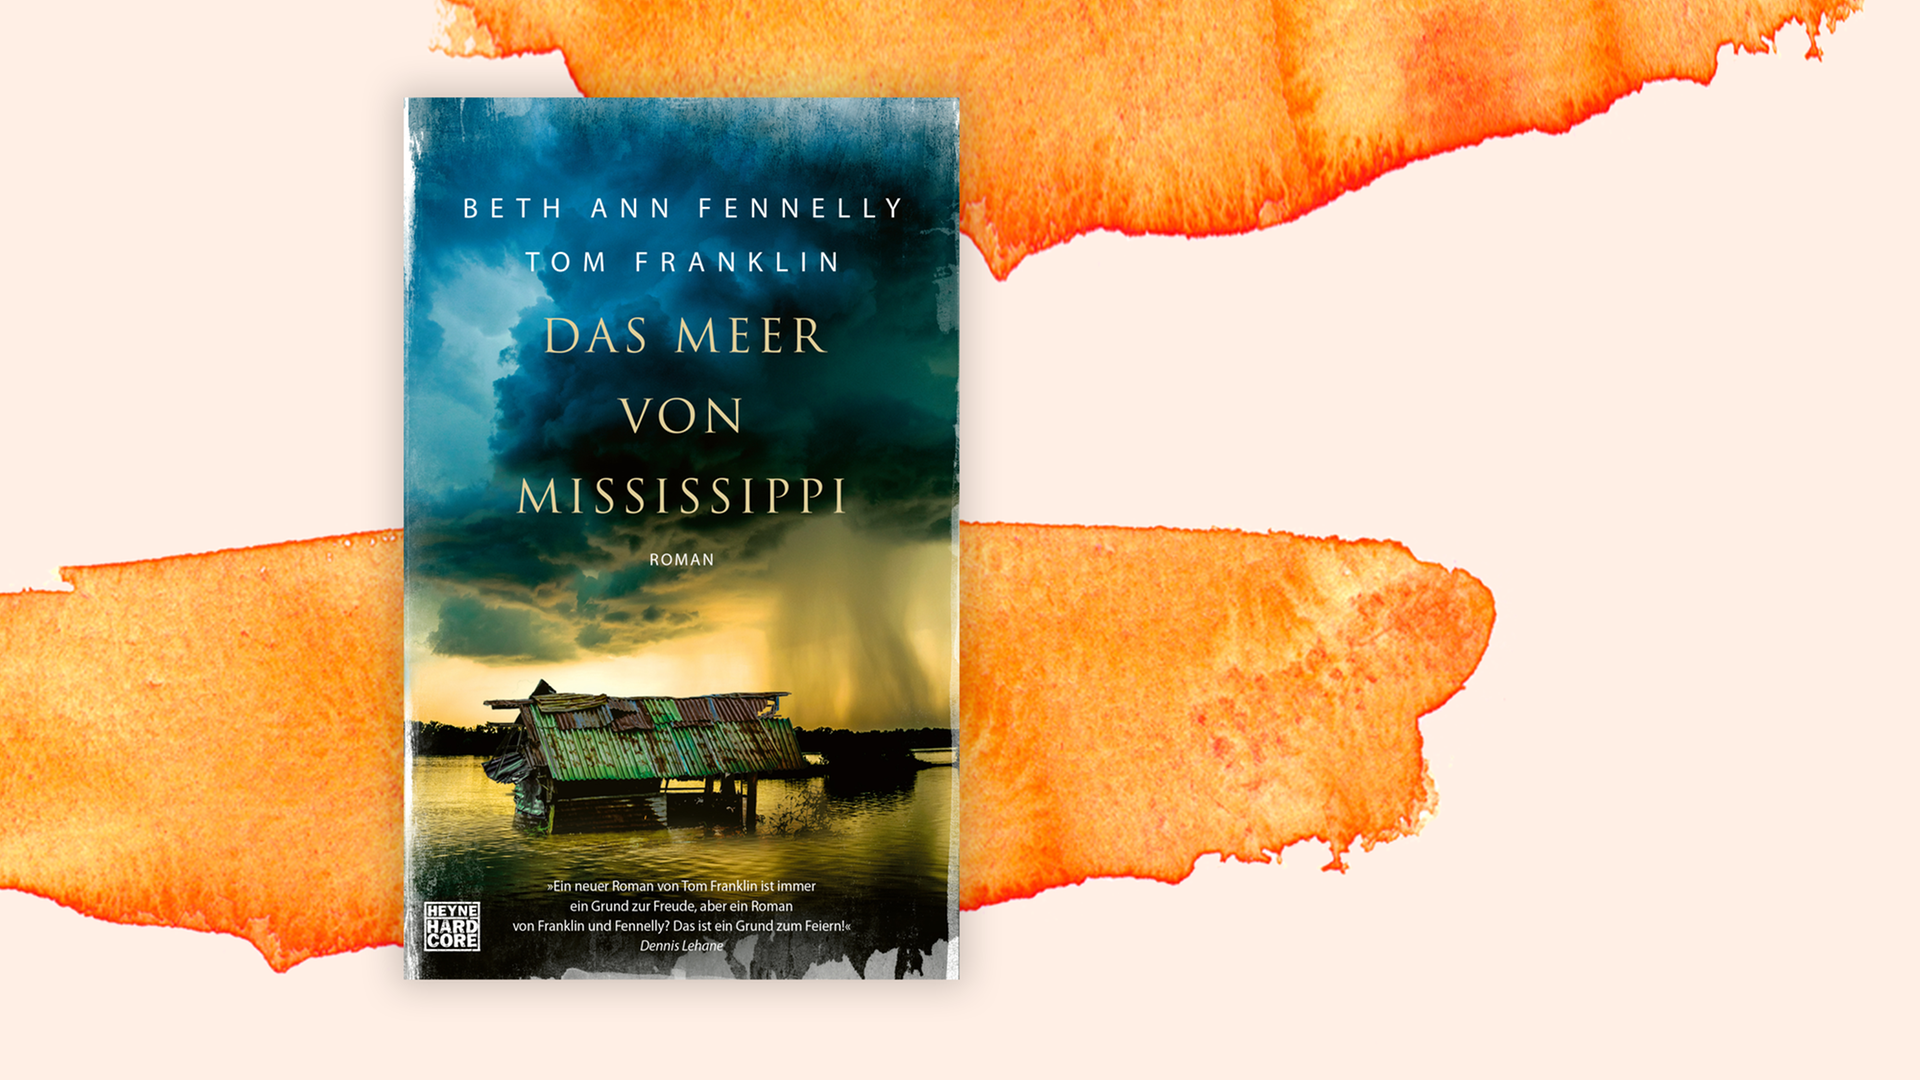 Zu sehen ist das Cover des Buches "Das Meer von Mississippi" von Beth Ann Fennelly und Tom Franklin.